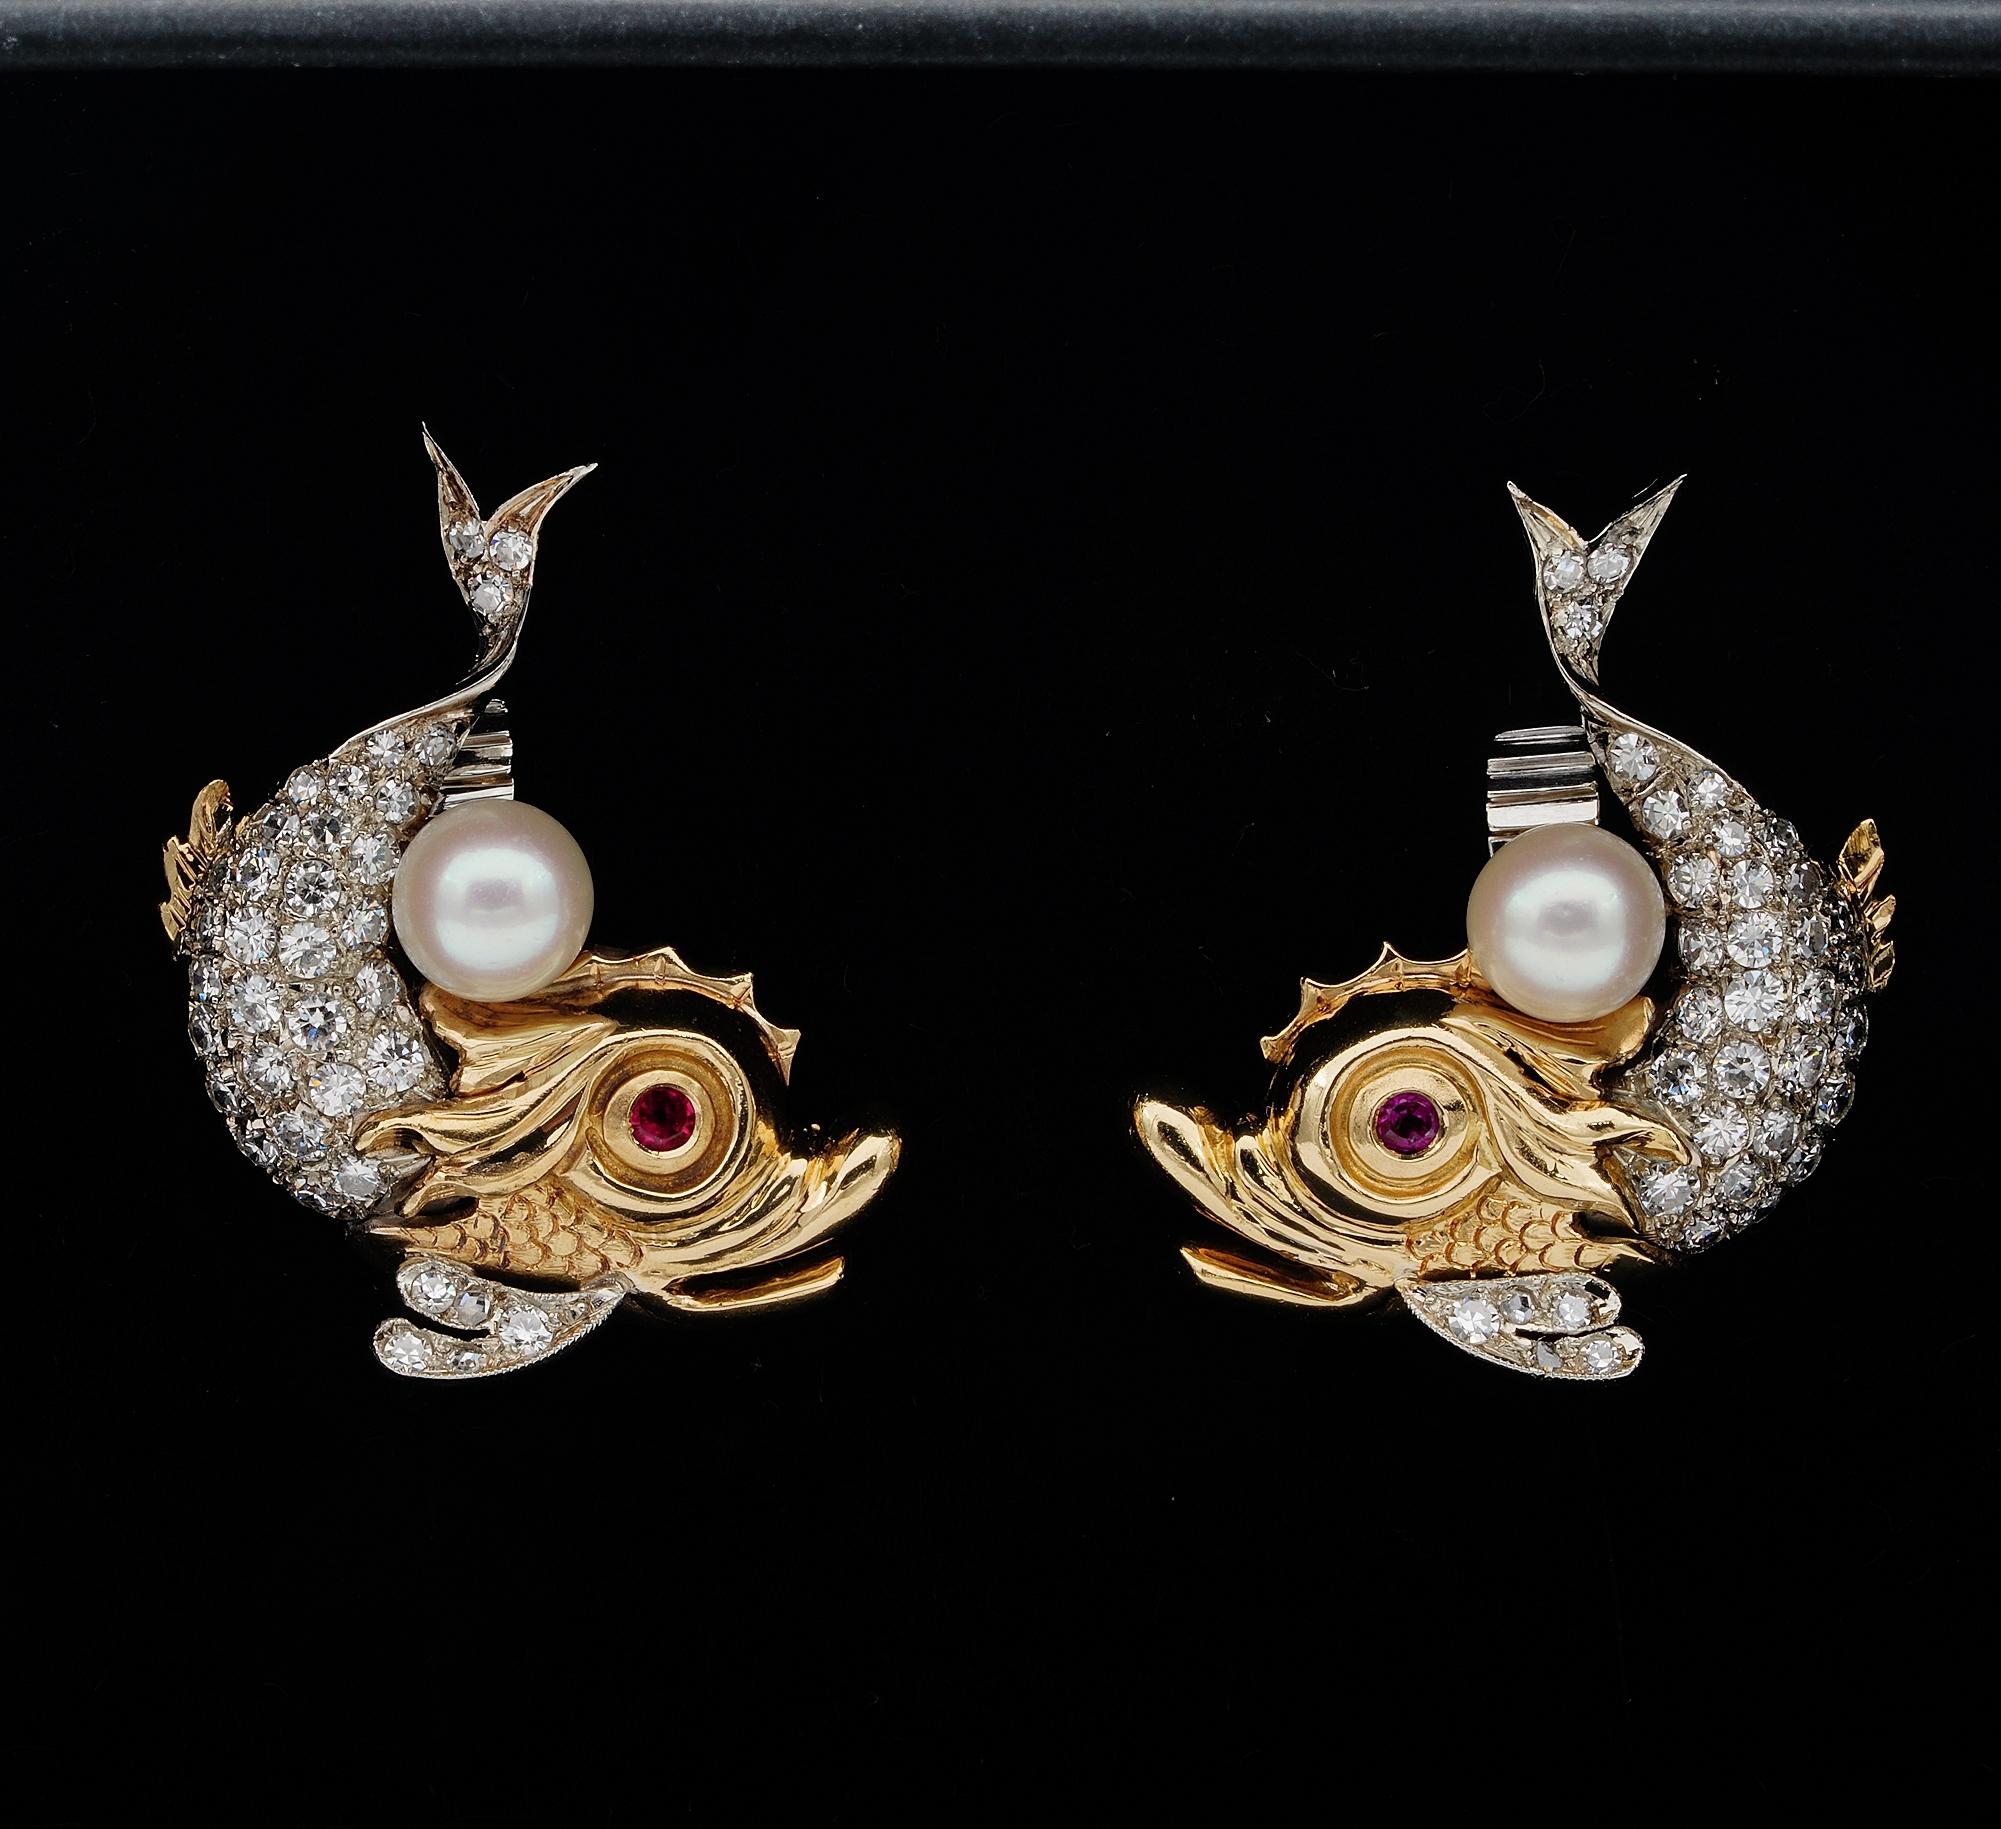 Das ungewöhnliche, atemberaubende Paar Vintage-Ohrringe im seltenen Delphin-Design, inspiriert von der Renaissance, um 1940
Handgefertigt als Unikat in extrem feiner Manier aus massivem 18 kt Gold, haben sie einen netten Kontrast zwischen der